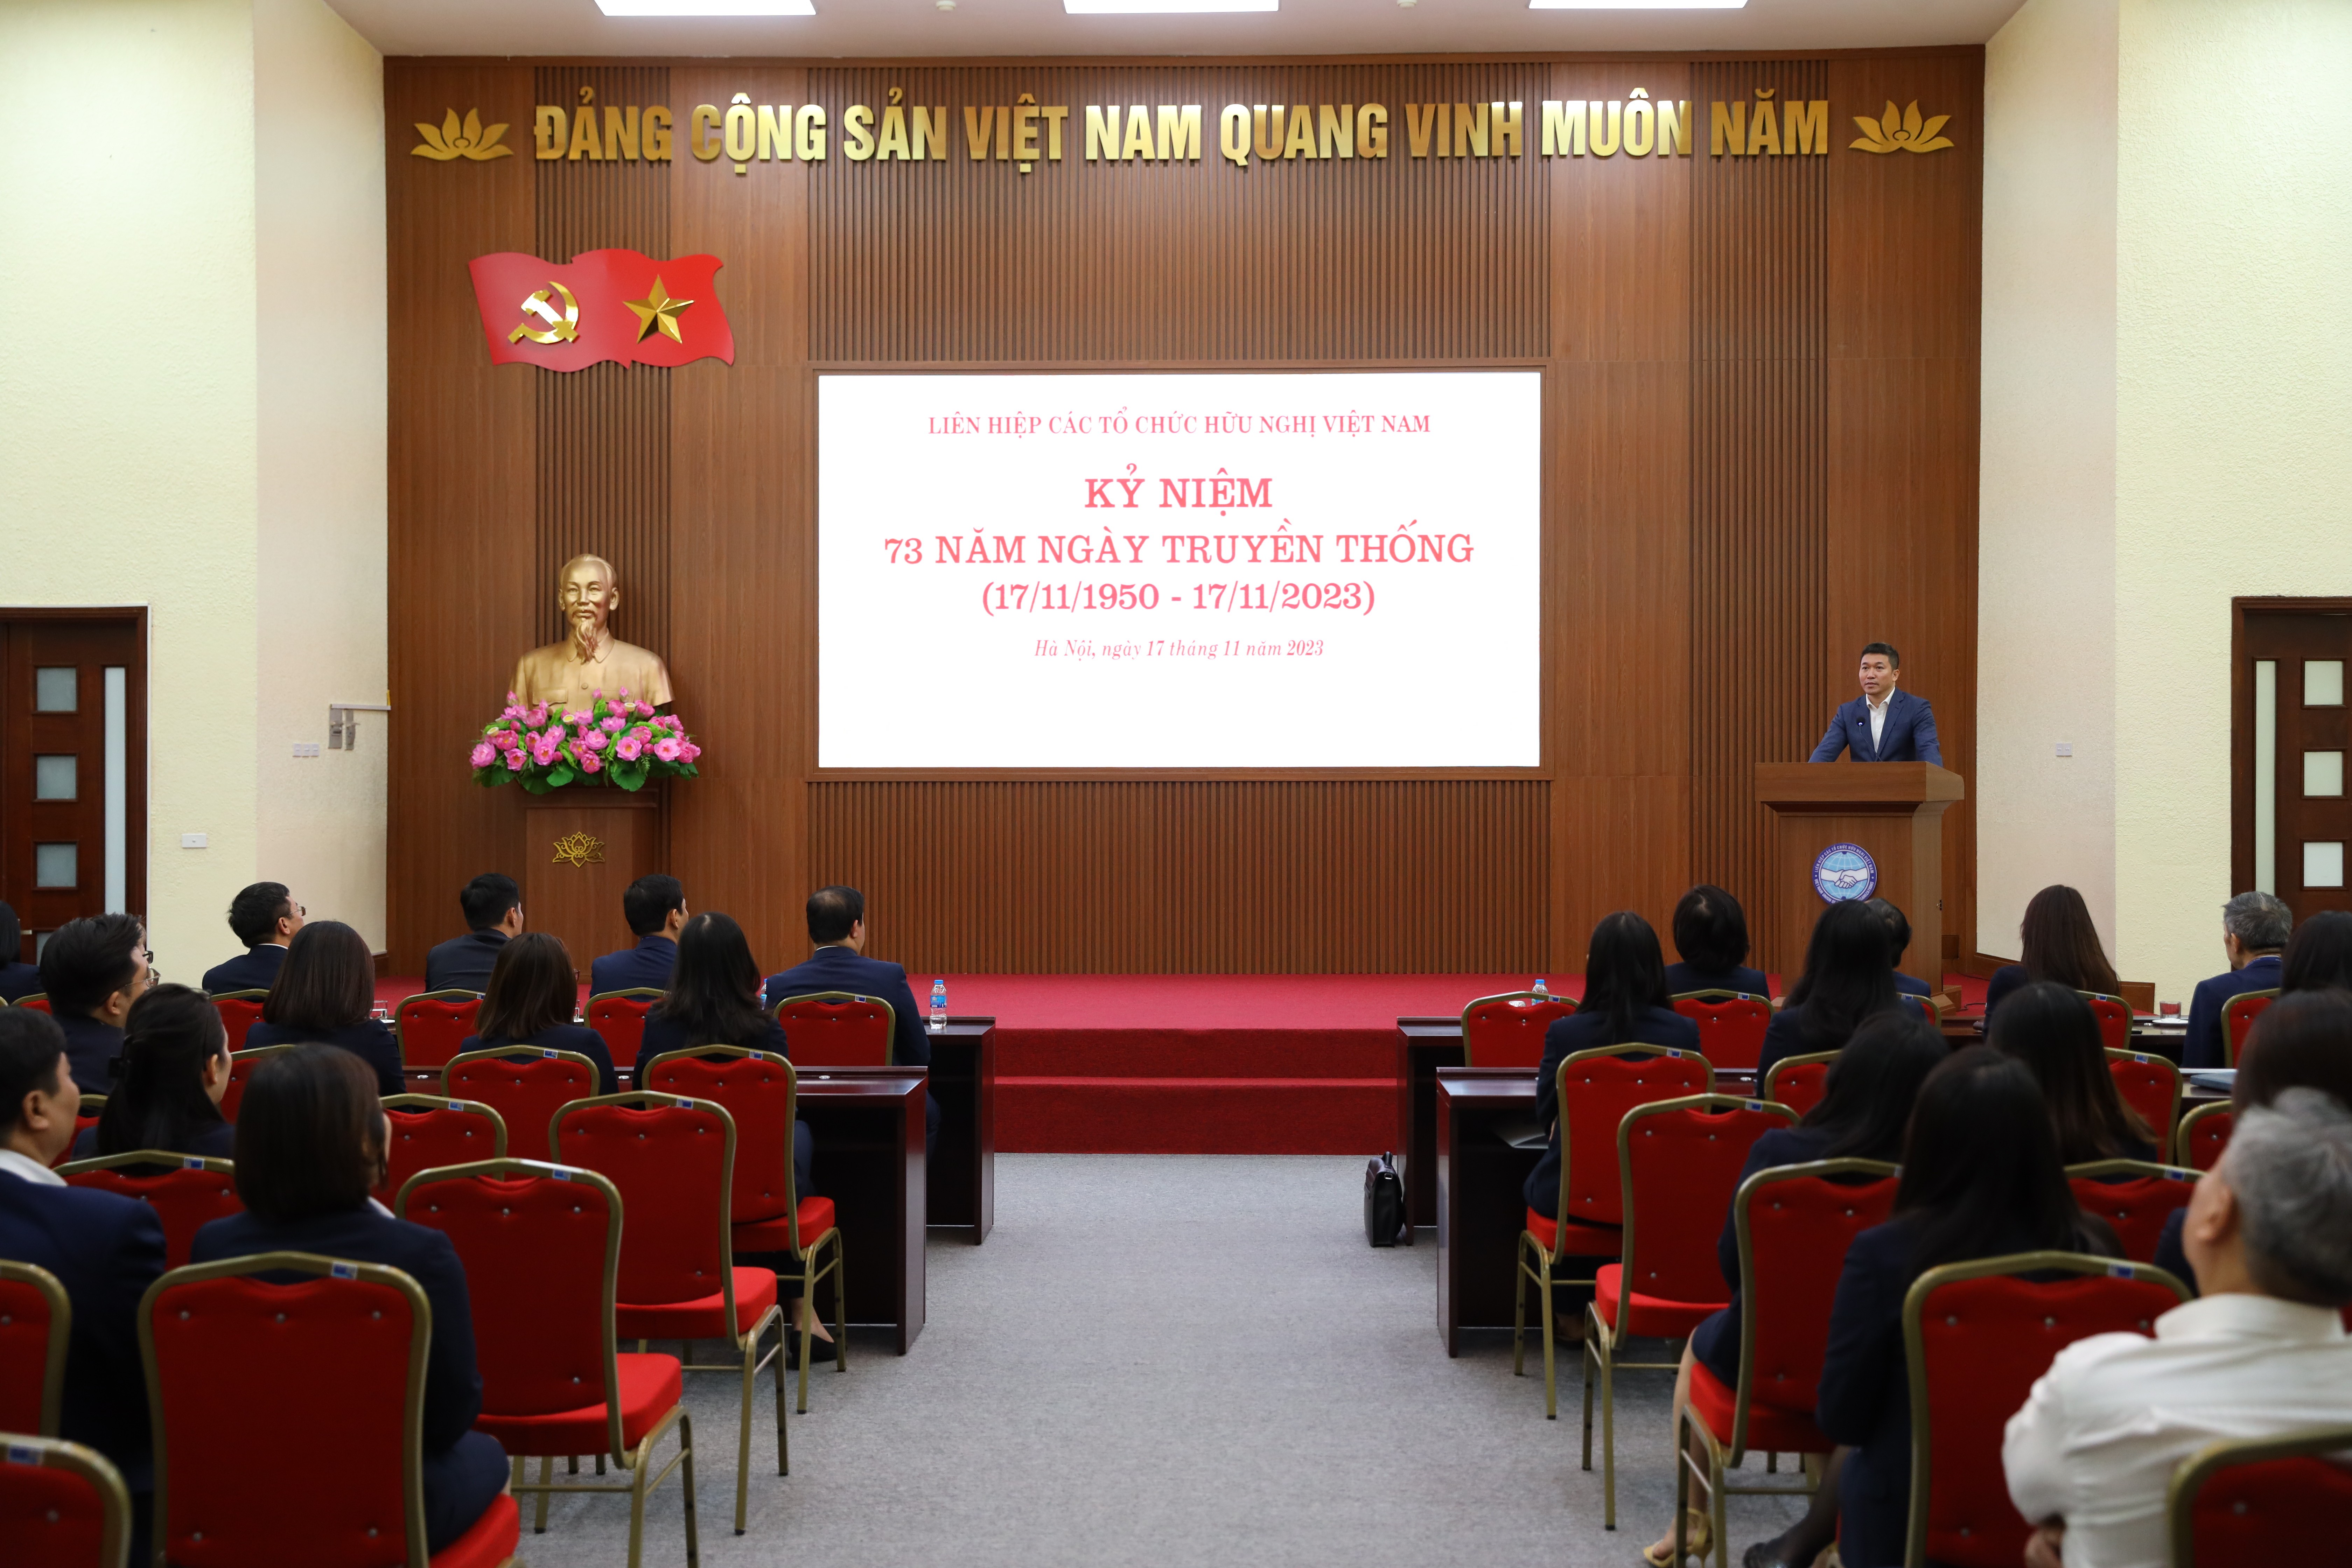 Buổi gặp gỡ kỷ niệm 73 năm Ngày truyền thống Liên hiệp các tổ chức hữu nghị Việt Nam. (Ảnh: Đinh Hòa)